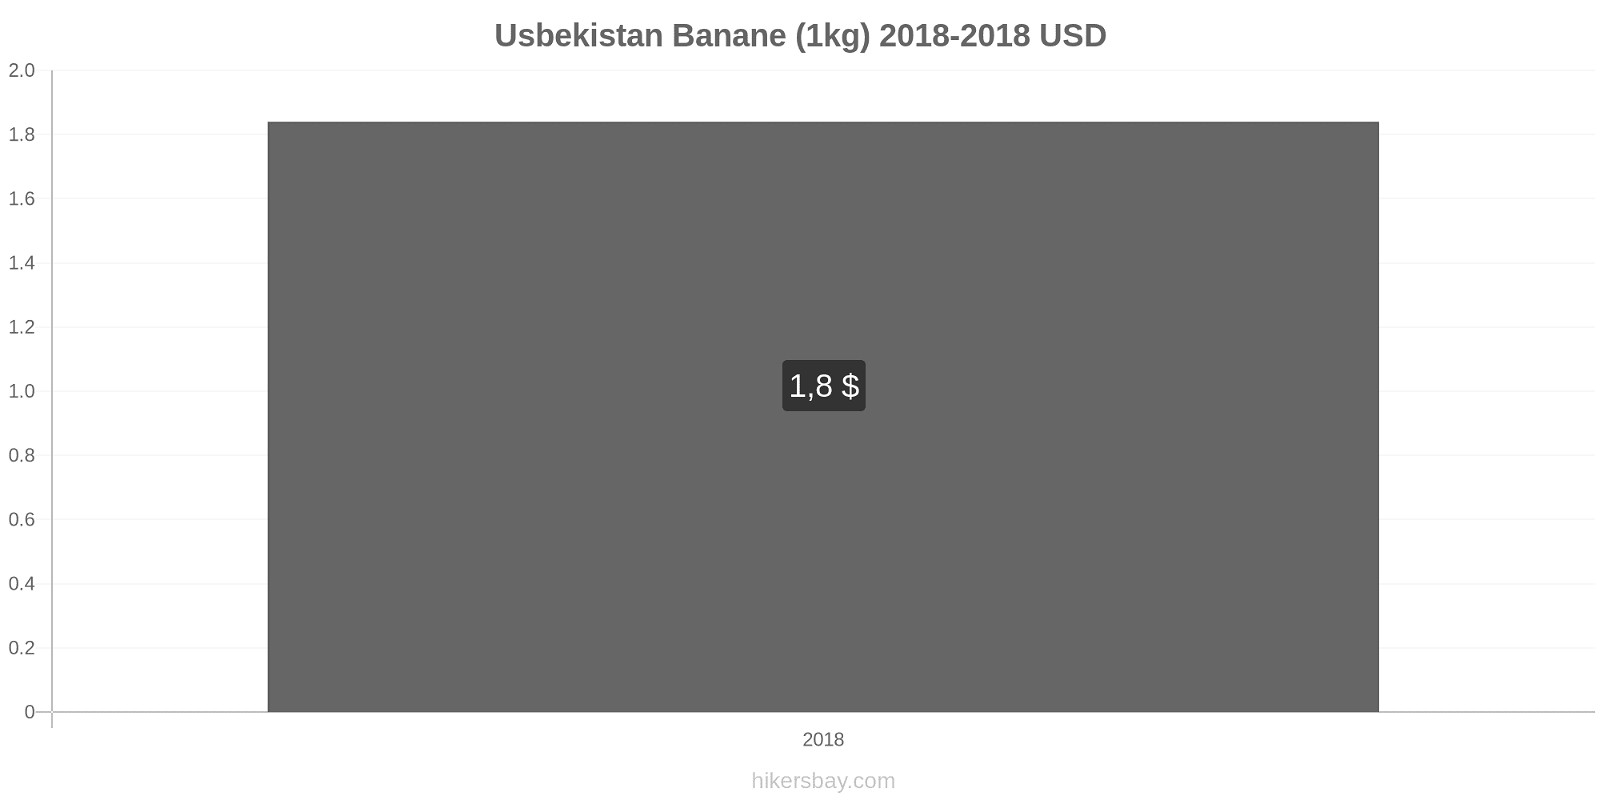 Usbekistan Preisänderungen Bananen (1kg) hikersbay.com